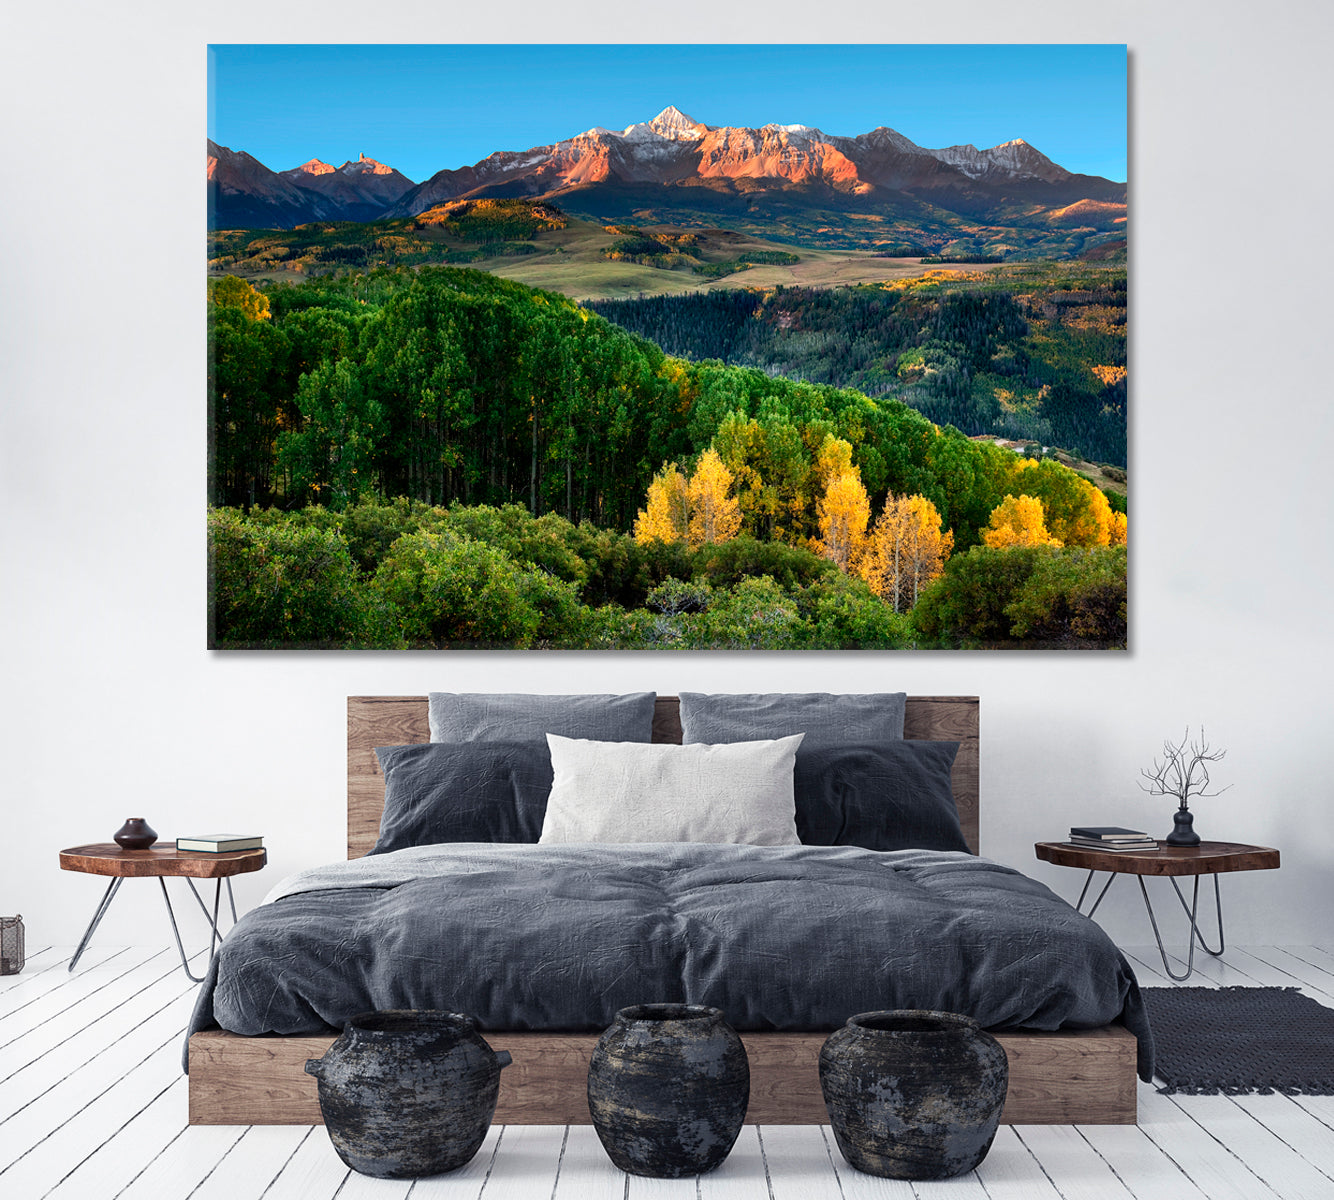 Wilson Peak in Colorado Rockies Canvas Print ArtLexy 1 Panel 24"x16" inches 